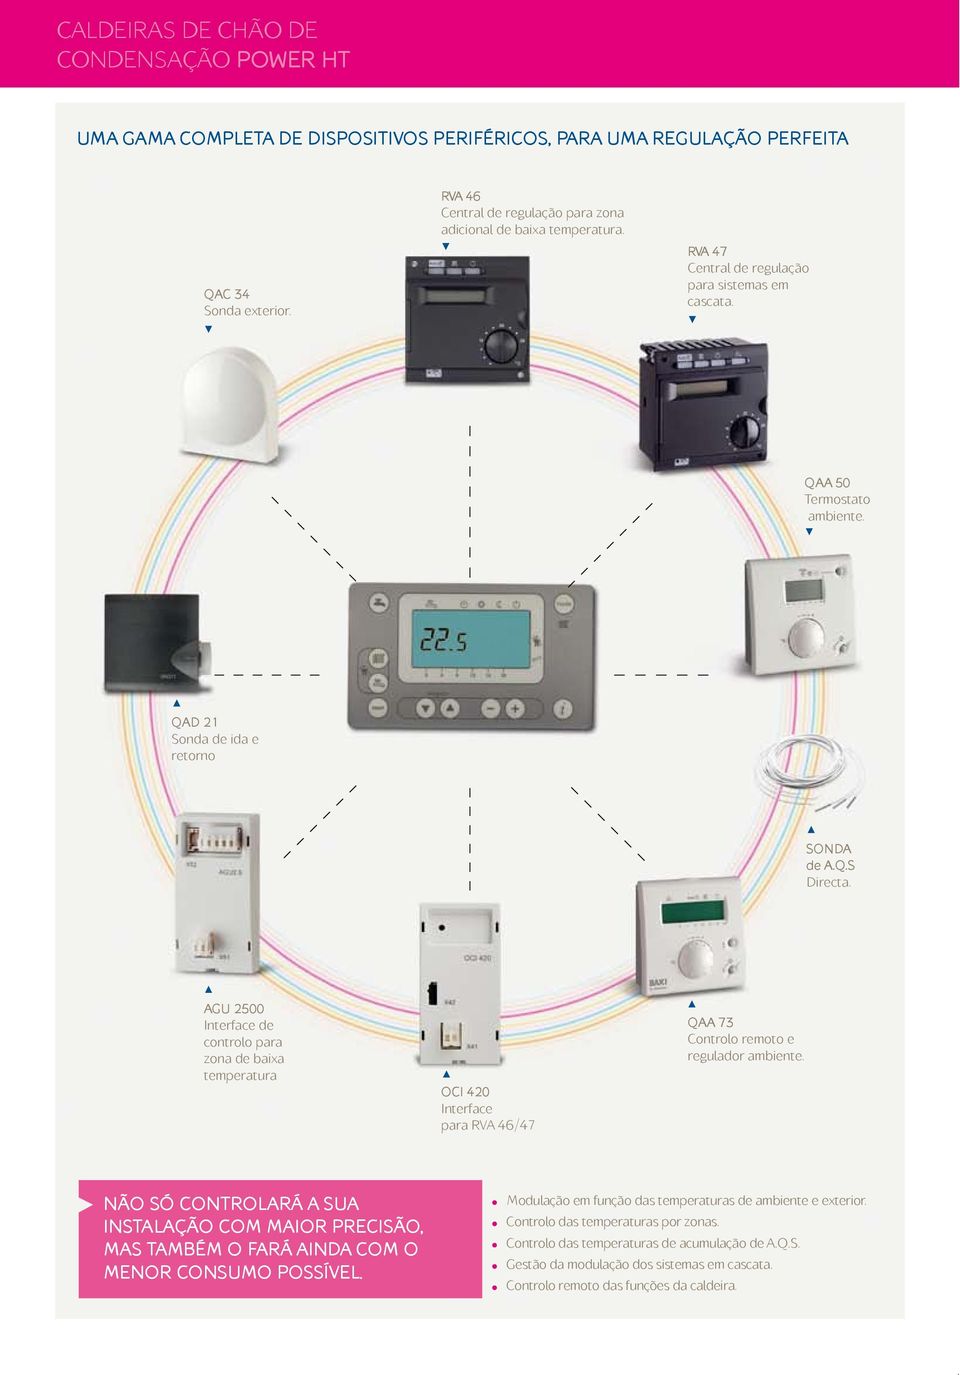 AGU 2500 Interface de controlo para zona de baixa temperatura OCI 420 Interface para RVA 46/47 QAA 73 Controlo remoto e regulador ambiente.